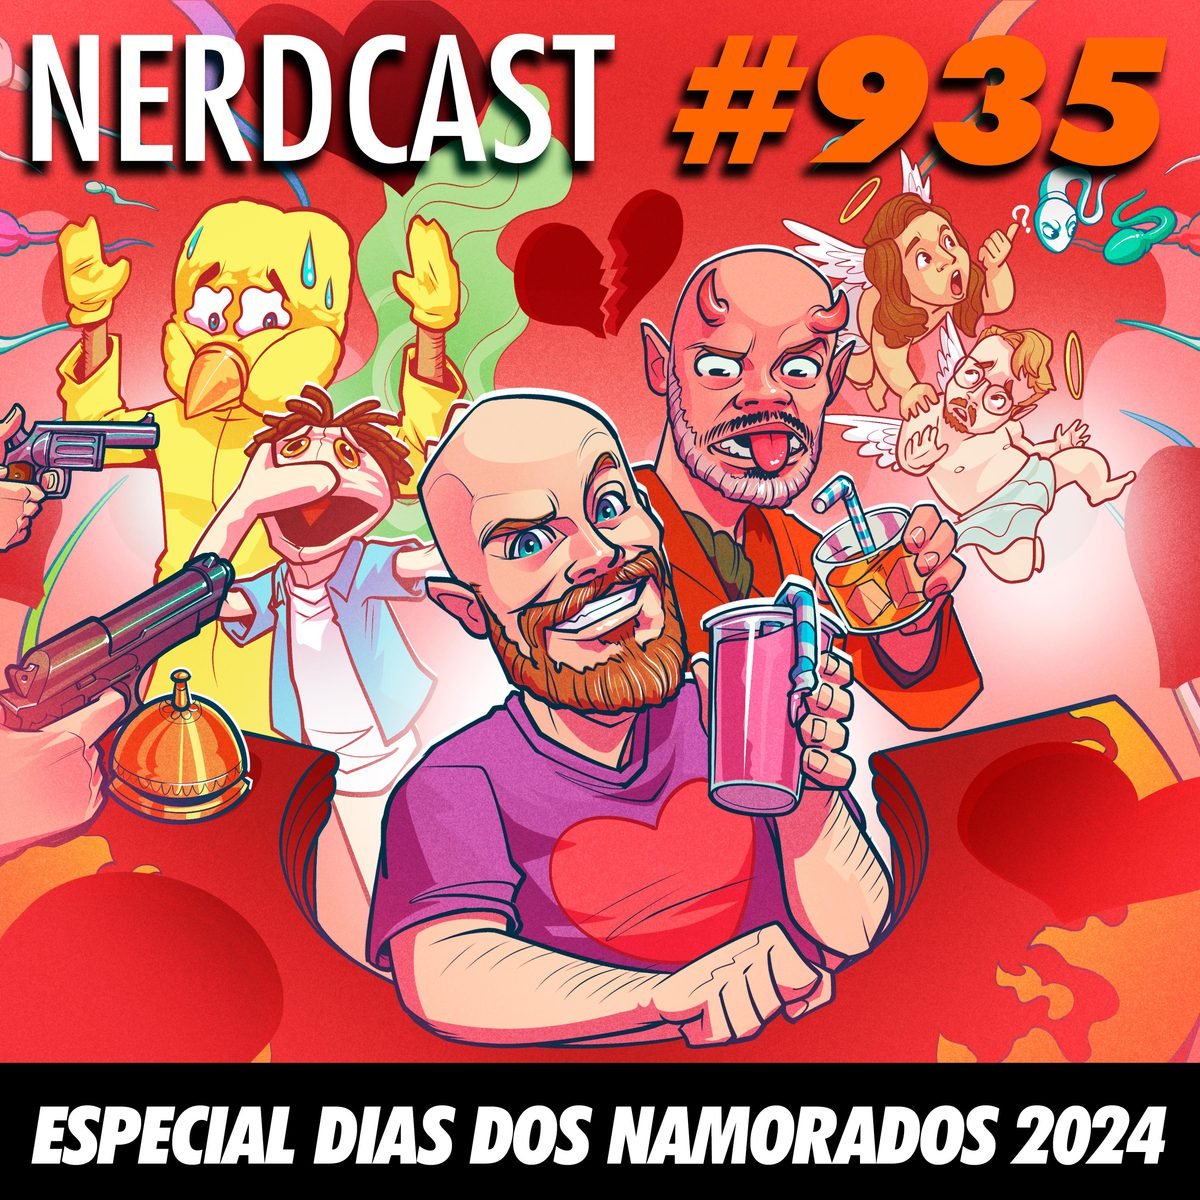 NerdCast 935 - Especial Dia dos Namorados 2024